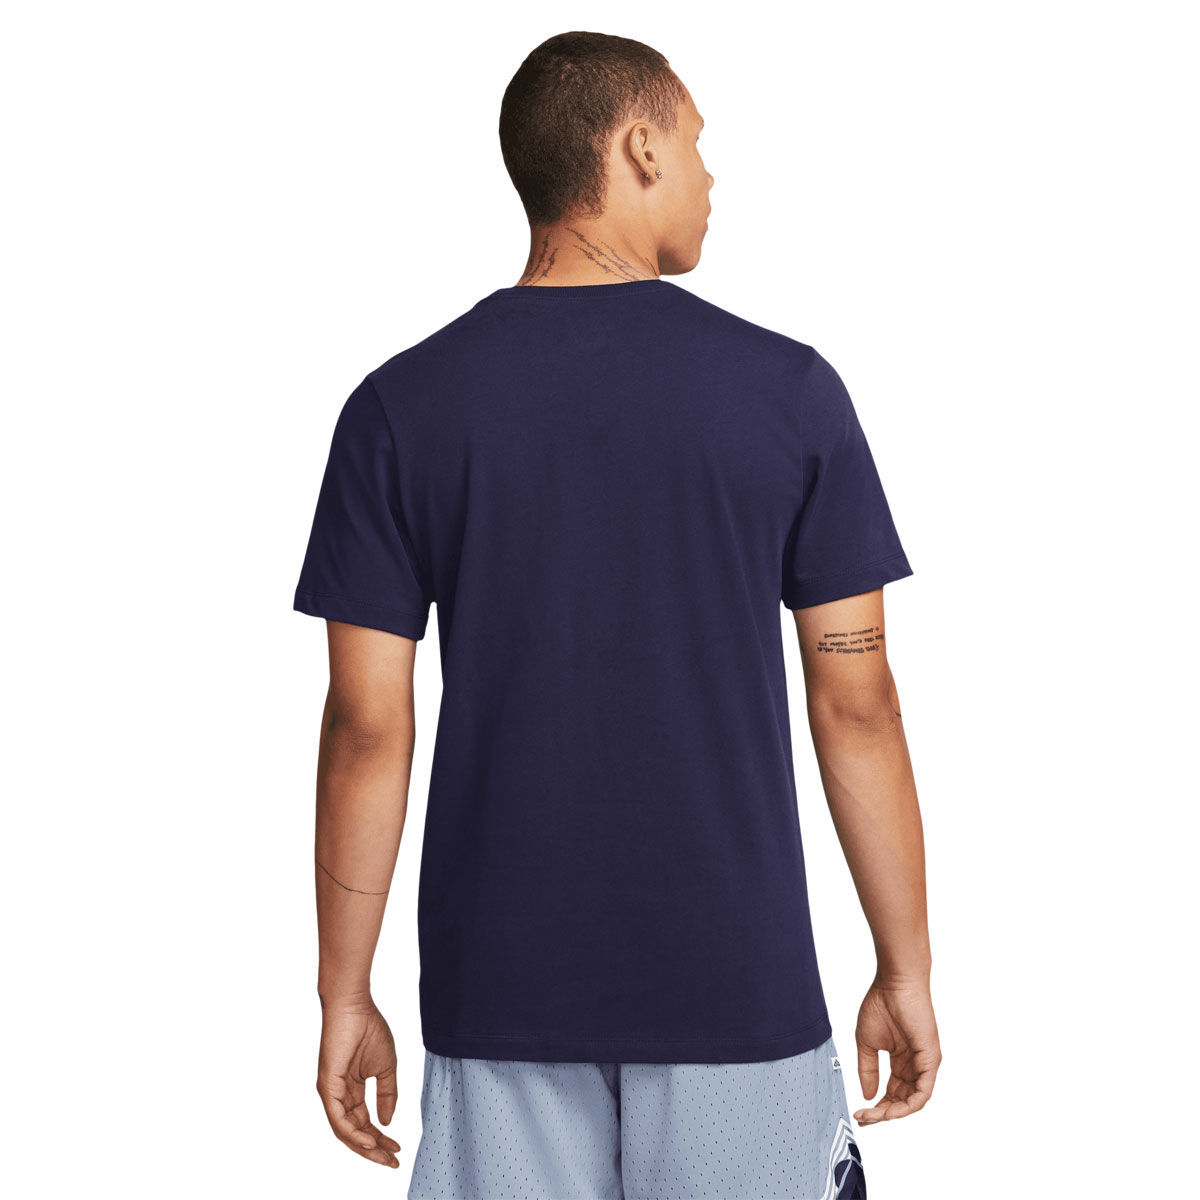 Nike / Men's Giannis Freak Premium Basketball T-Shirt